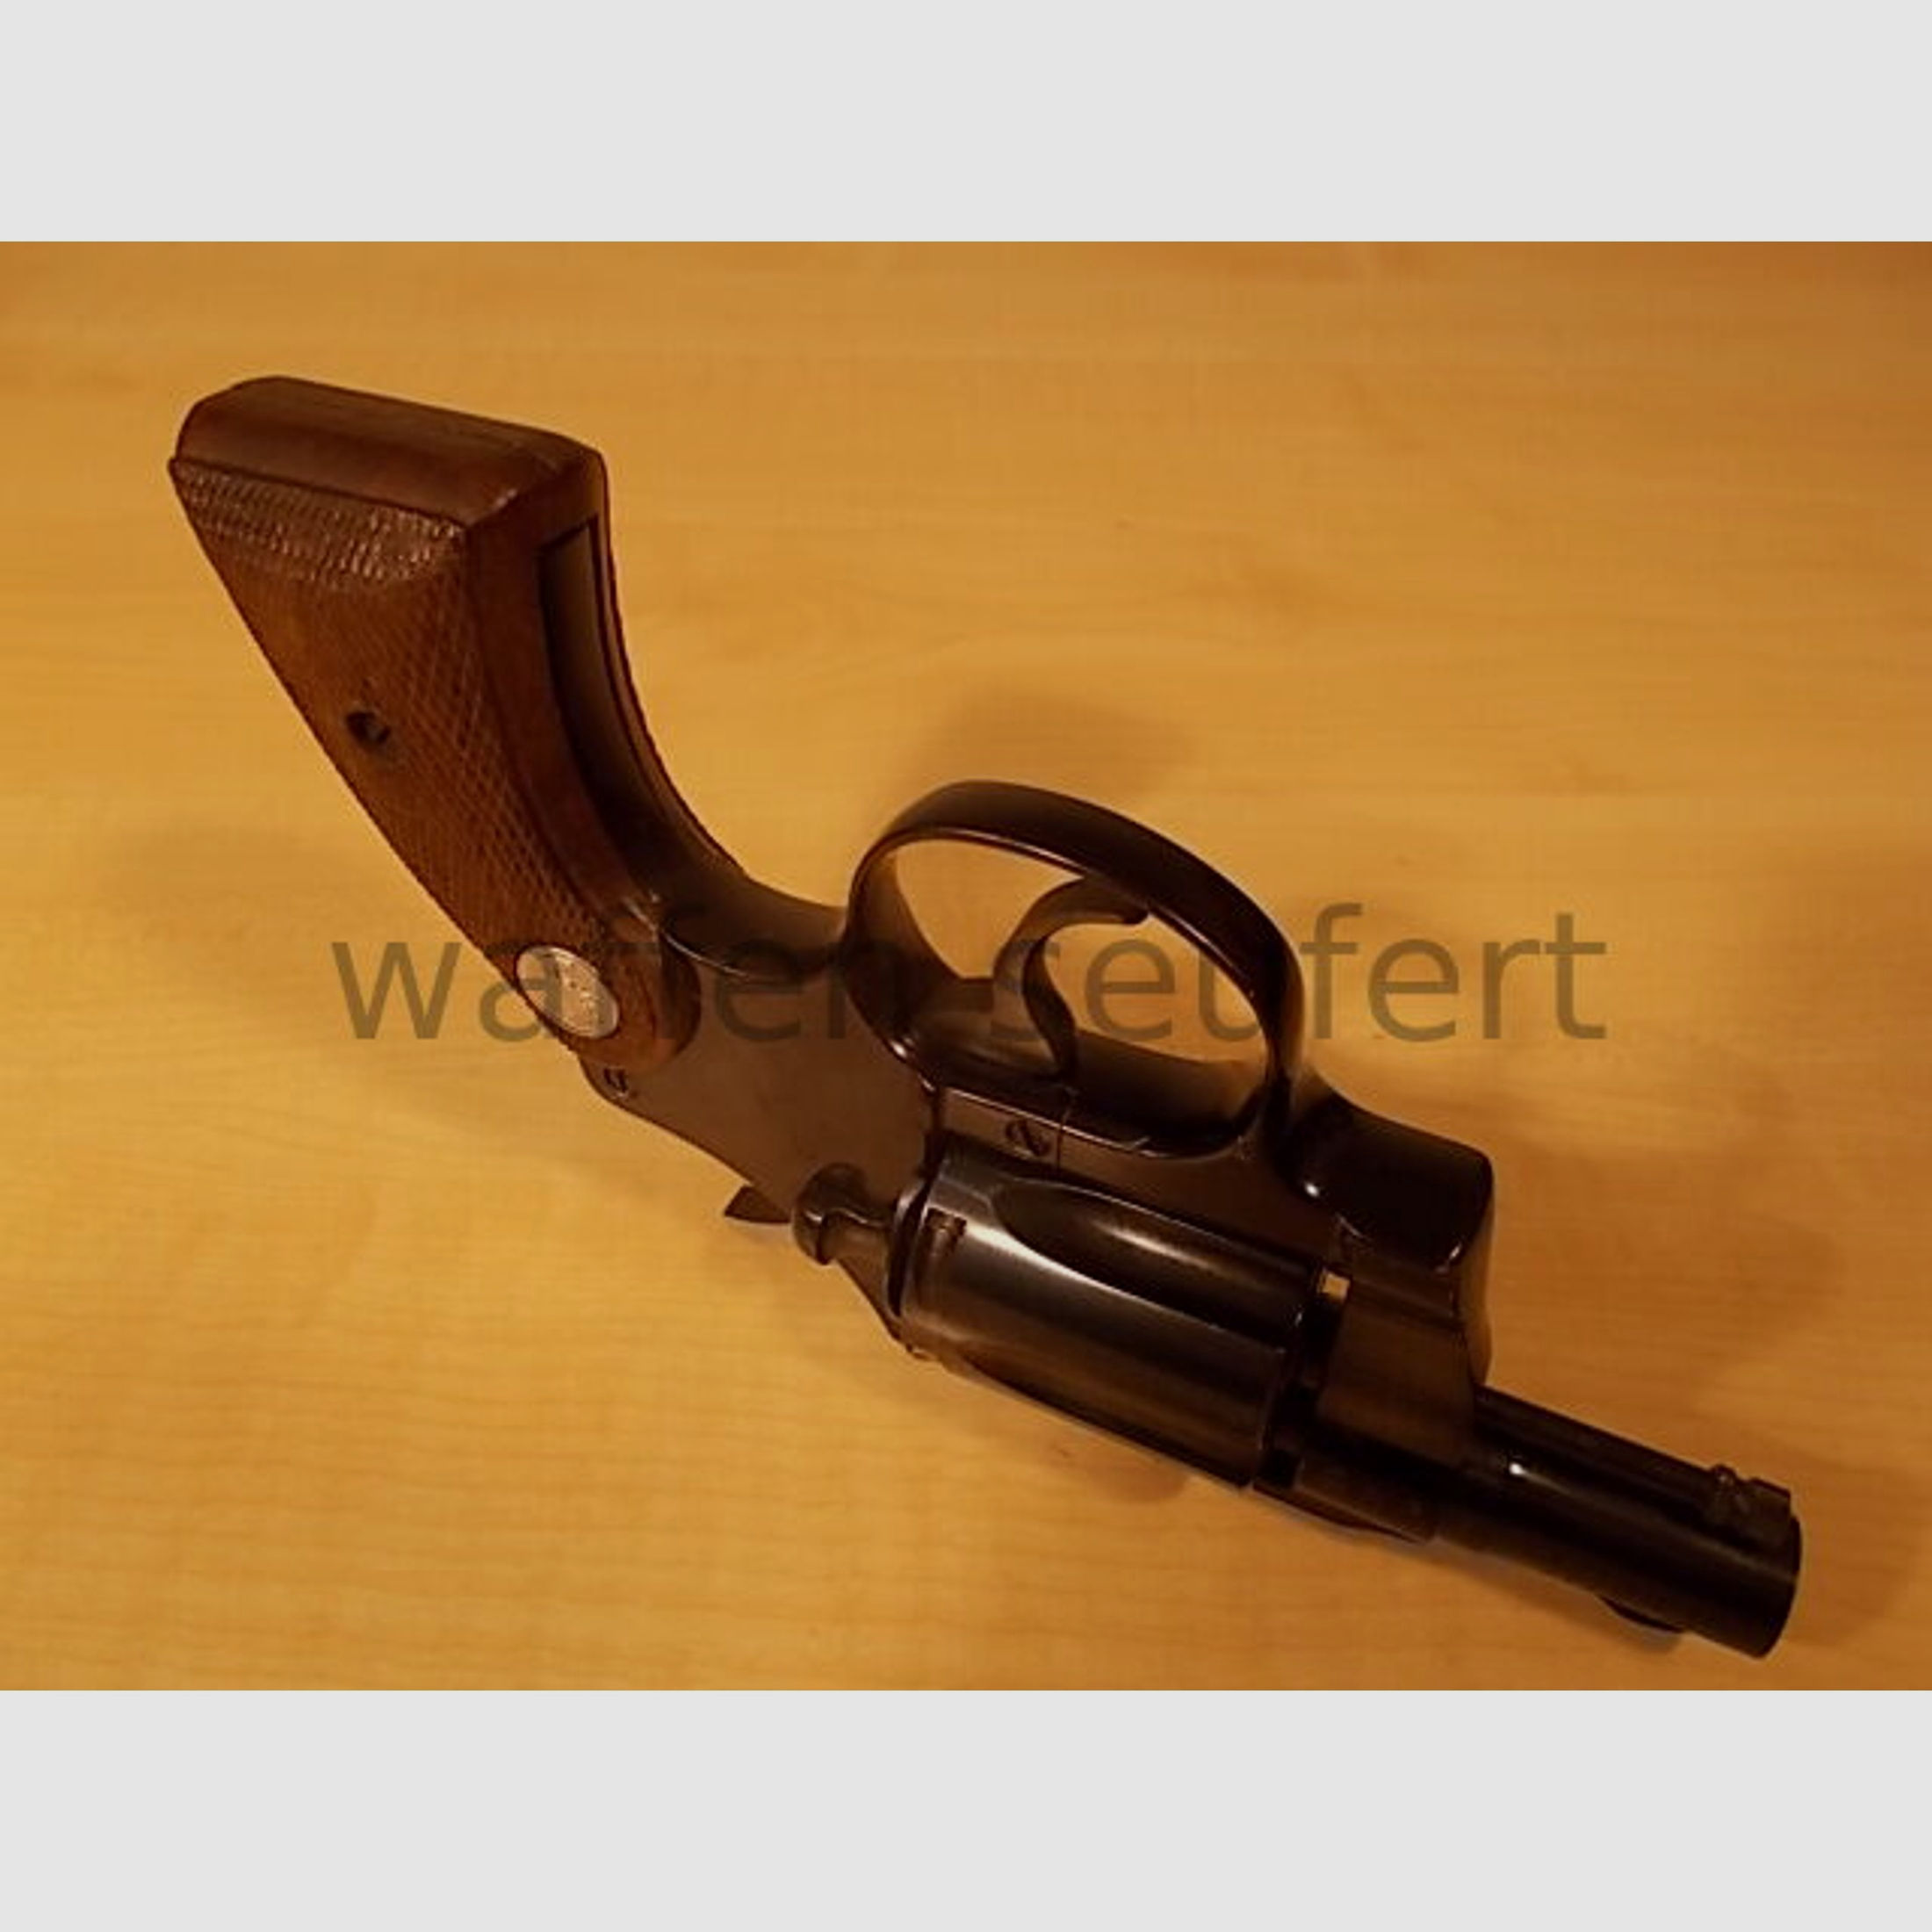 Colt Agent Revolver 2" mit Leichtmetallrahmen